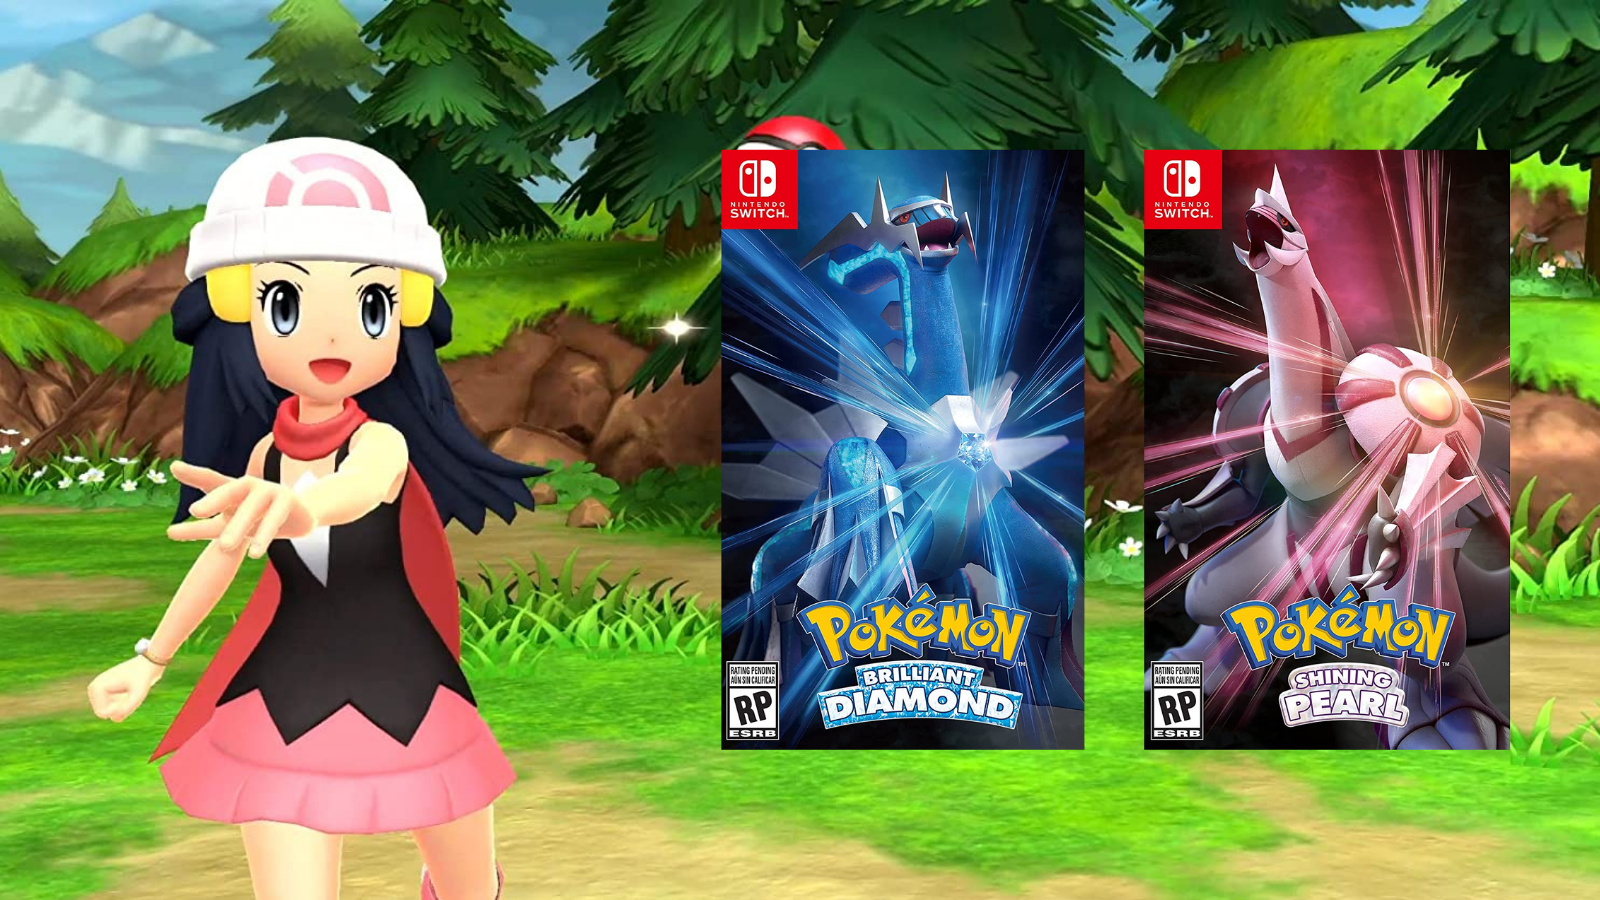 Pokémon Brilliant Diamond, Shining Pearl pre-order bonus guide - Polygon